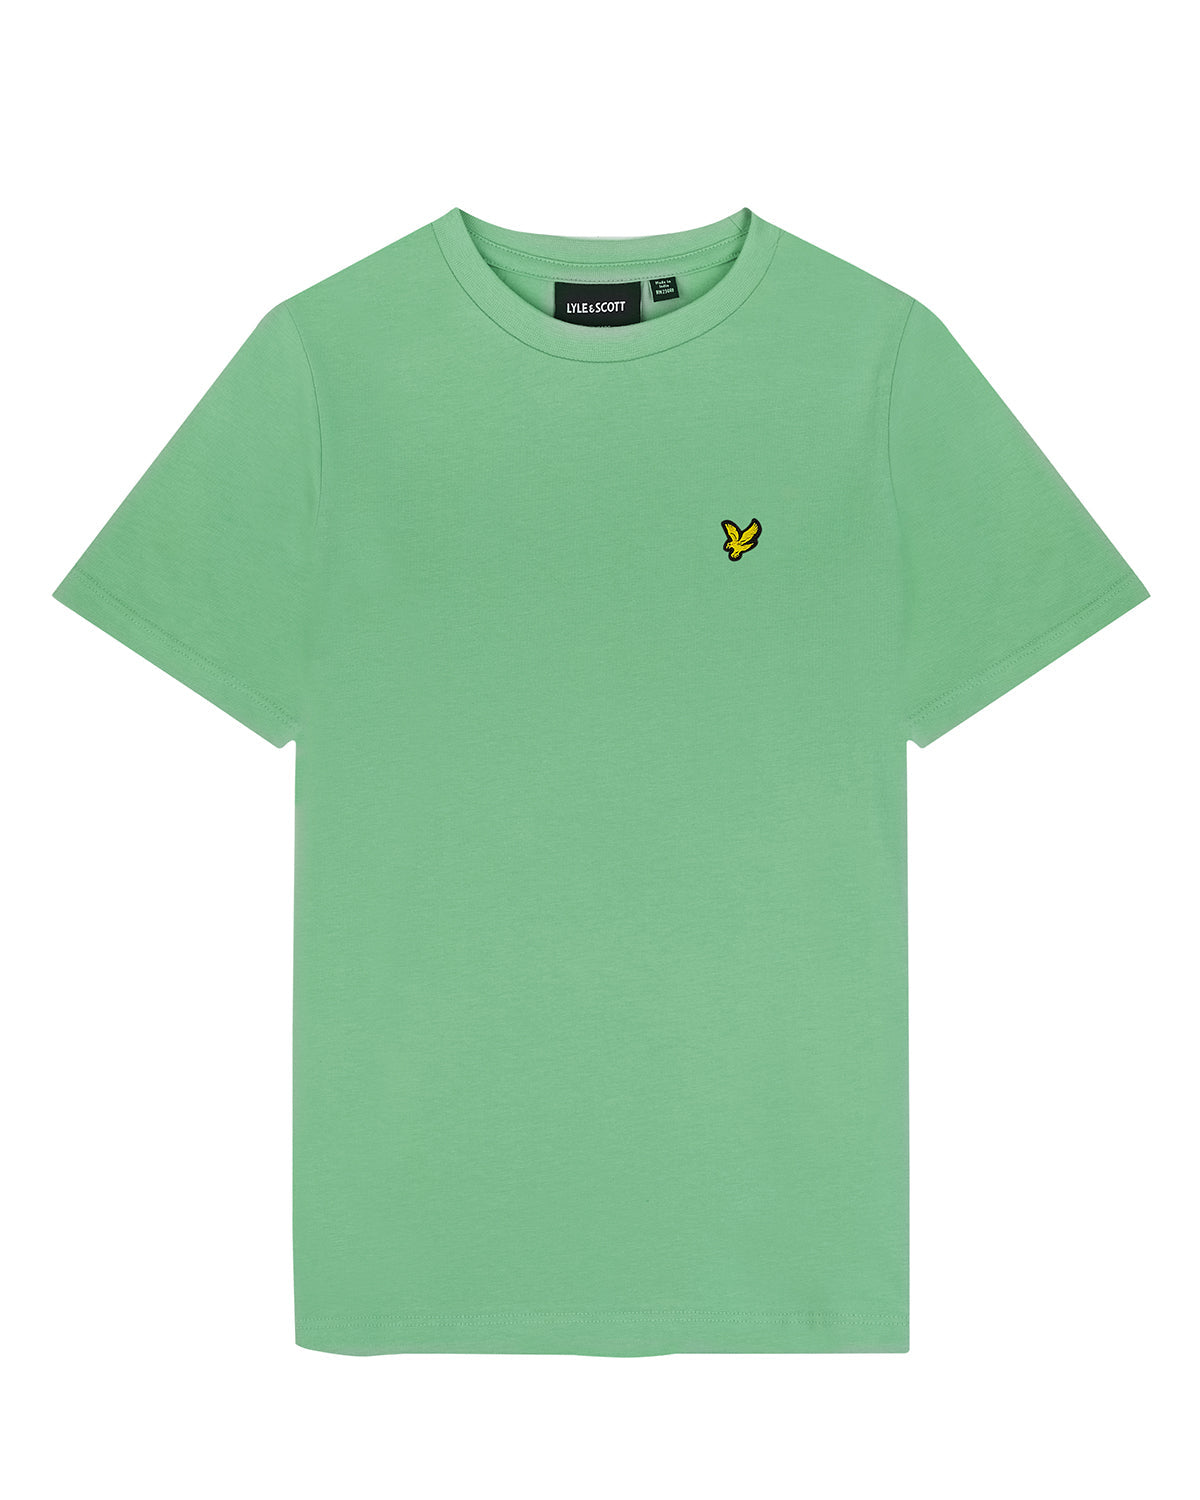 Jongens Plain T-shirt van Lyle & Scott in de kleur X156 Lawn Green in maat 170-176.